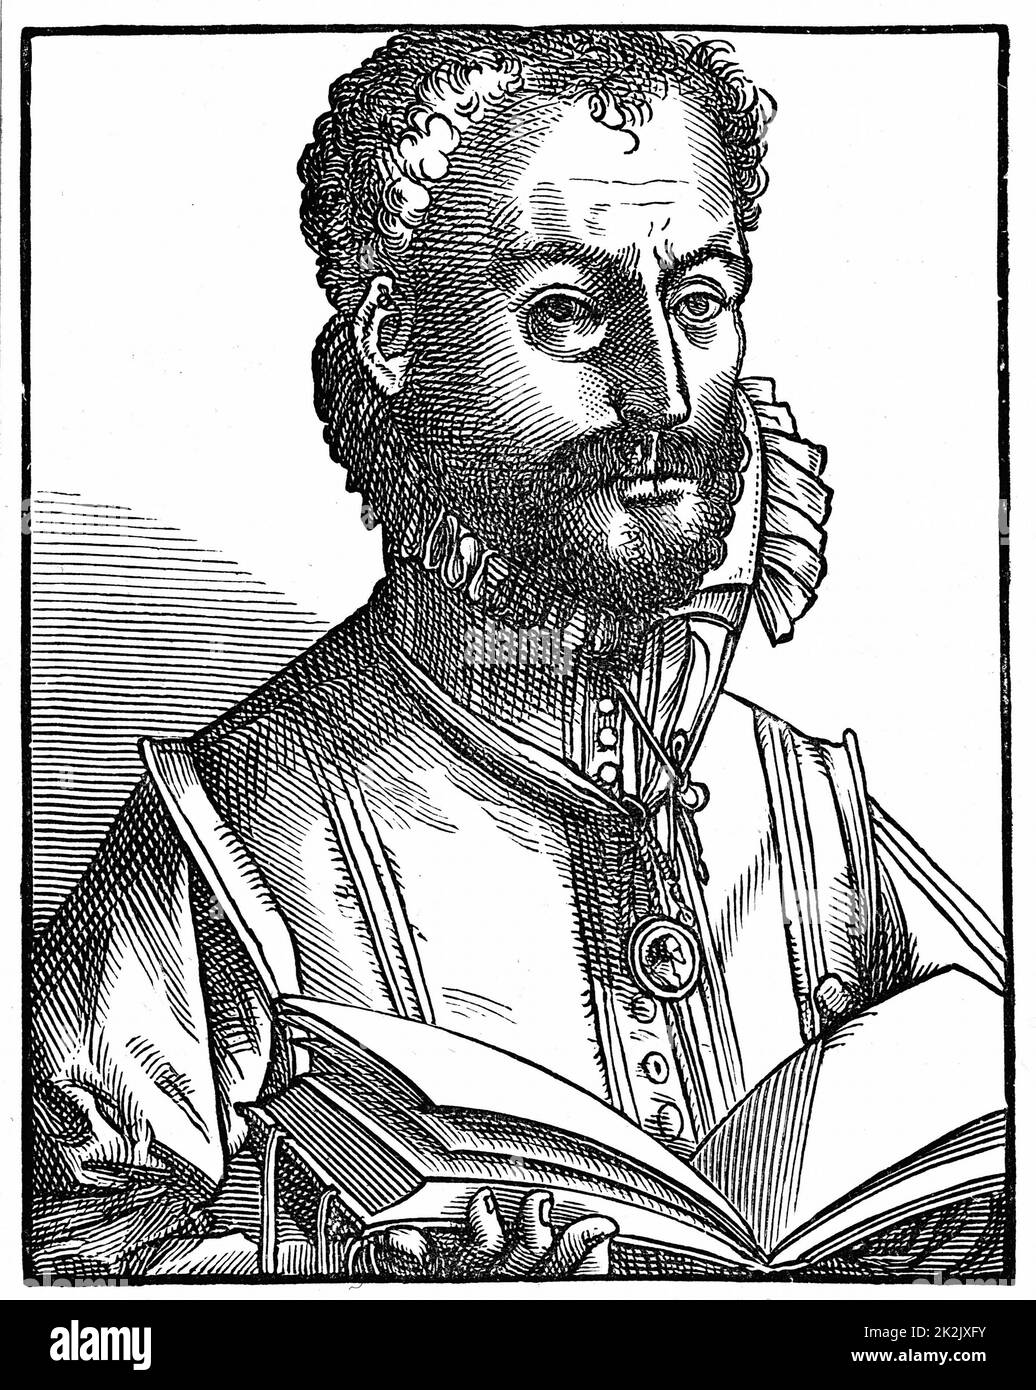 Orlando Lassus (Orlando di Lasso c.1532-1594) Compositore e musicista olandese. Attivo in Italia, Inghilterra e Francia, produce opere sia sacre che secolari. Nobilitato da Massimiliano II nel 1570. Taglio di legno Foto Stock